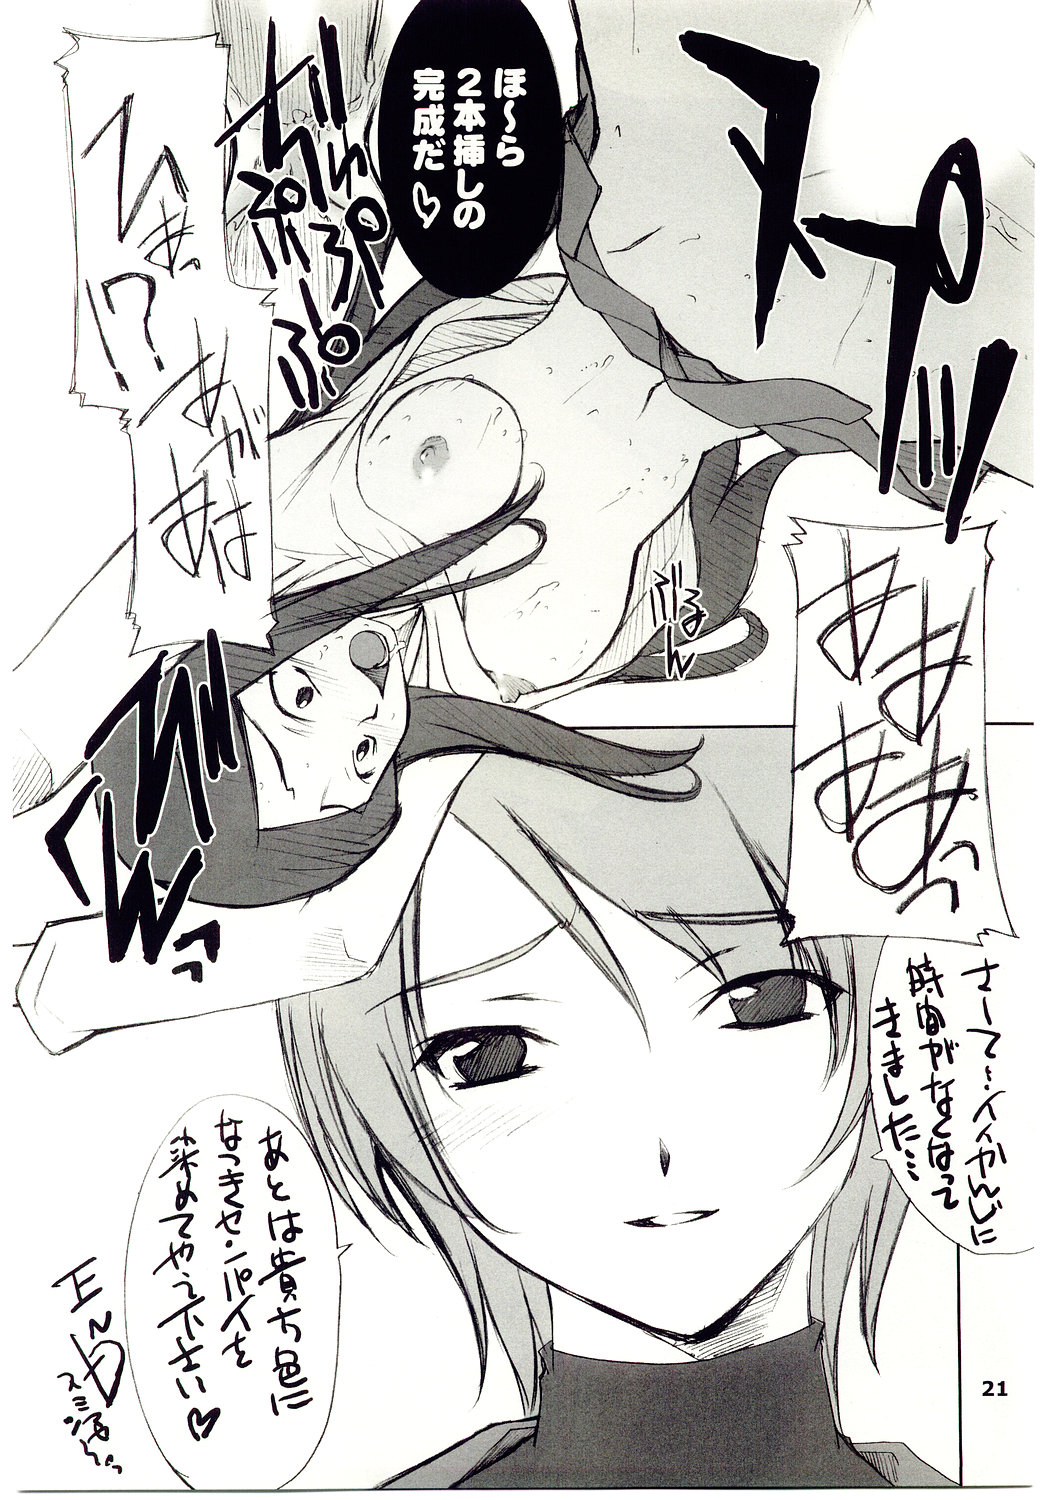 [P.Forest (Hozumi Takashi)] Kuga-chan to Iroiro (Mai Hime) page 20 full